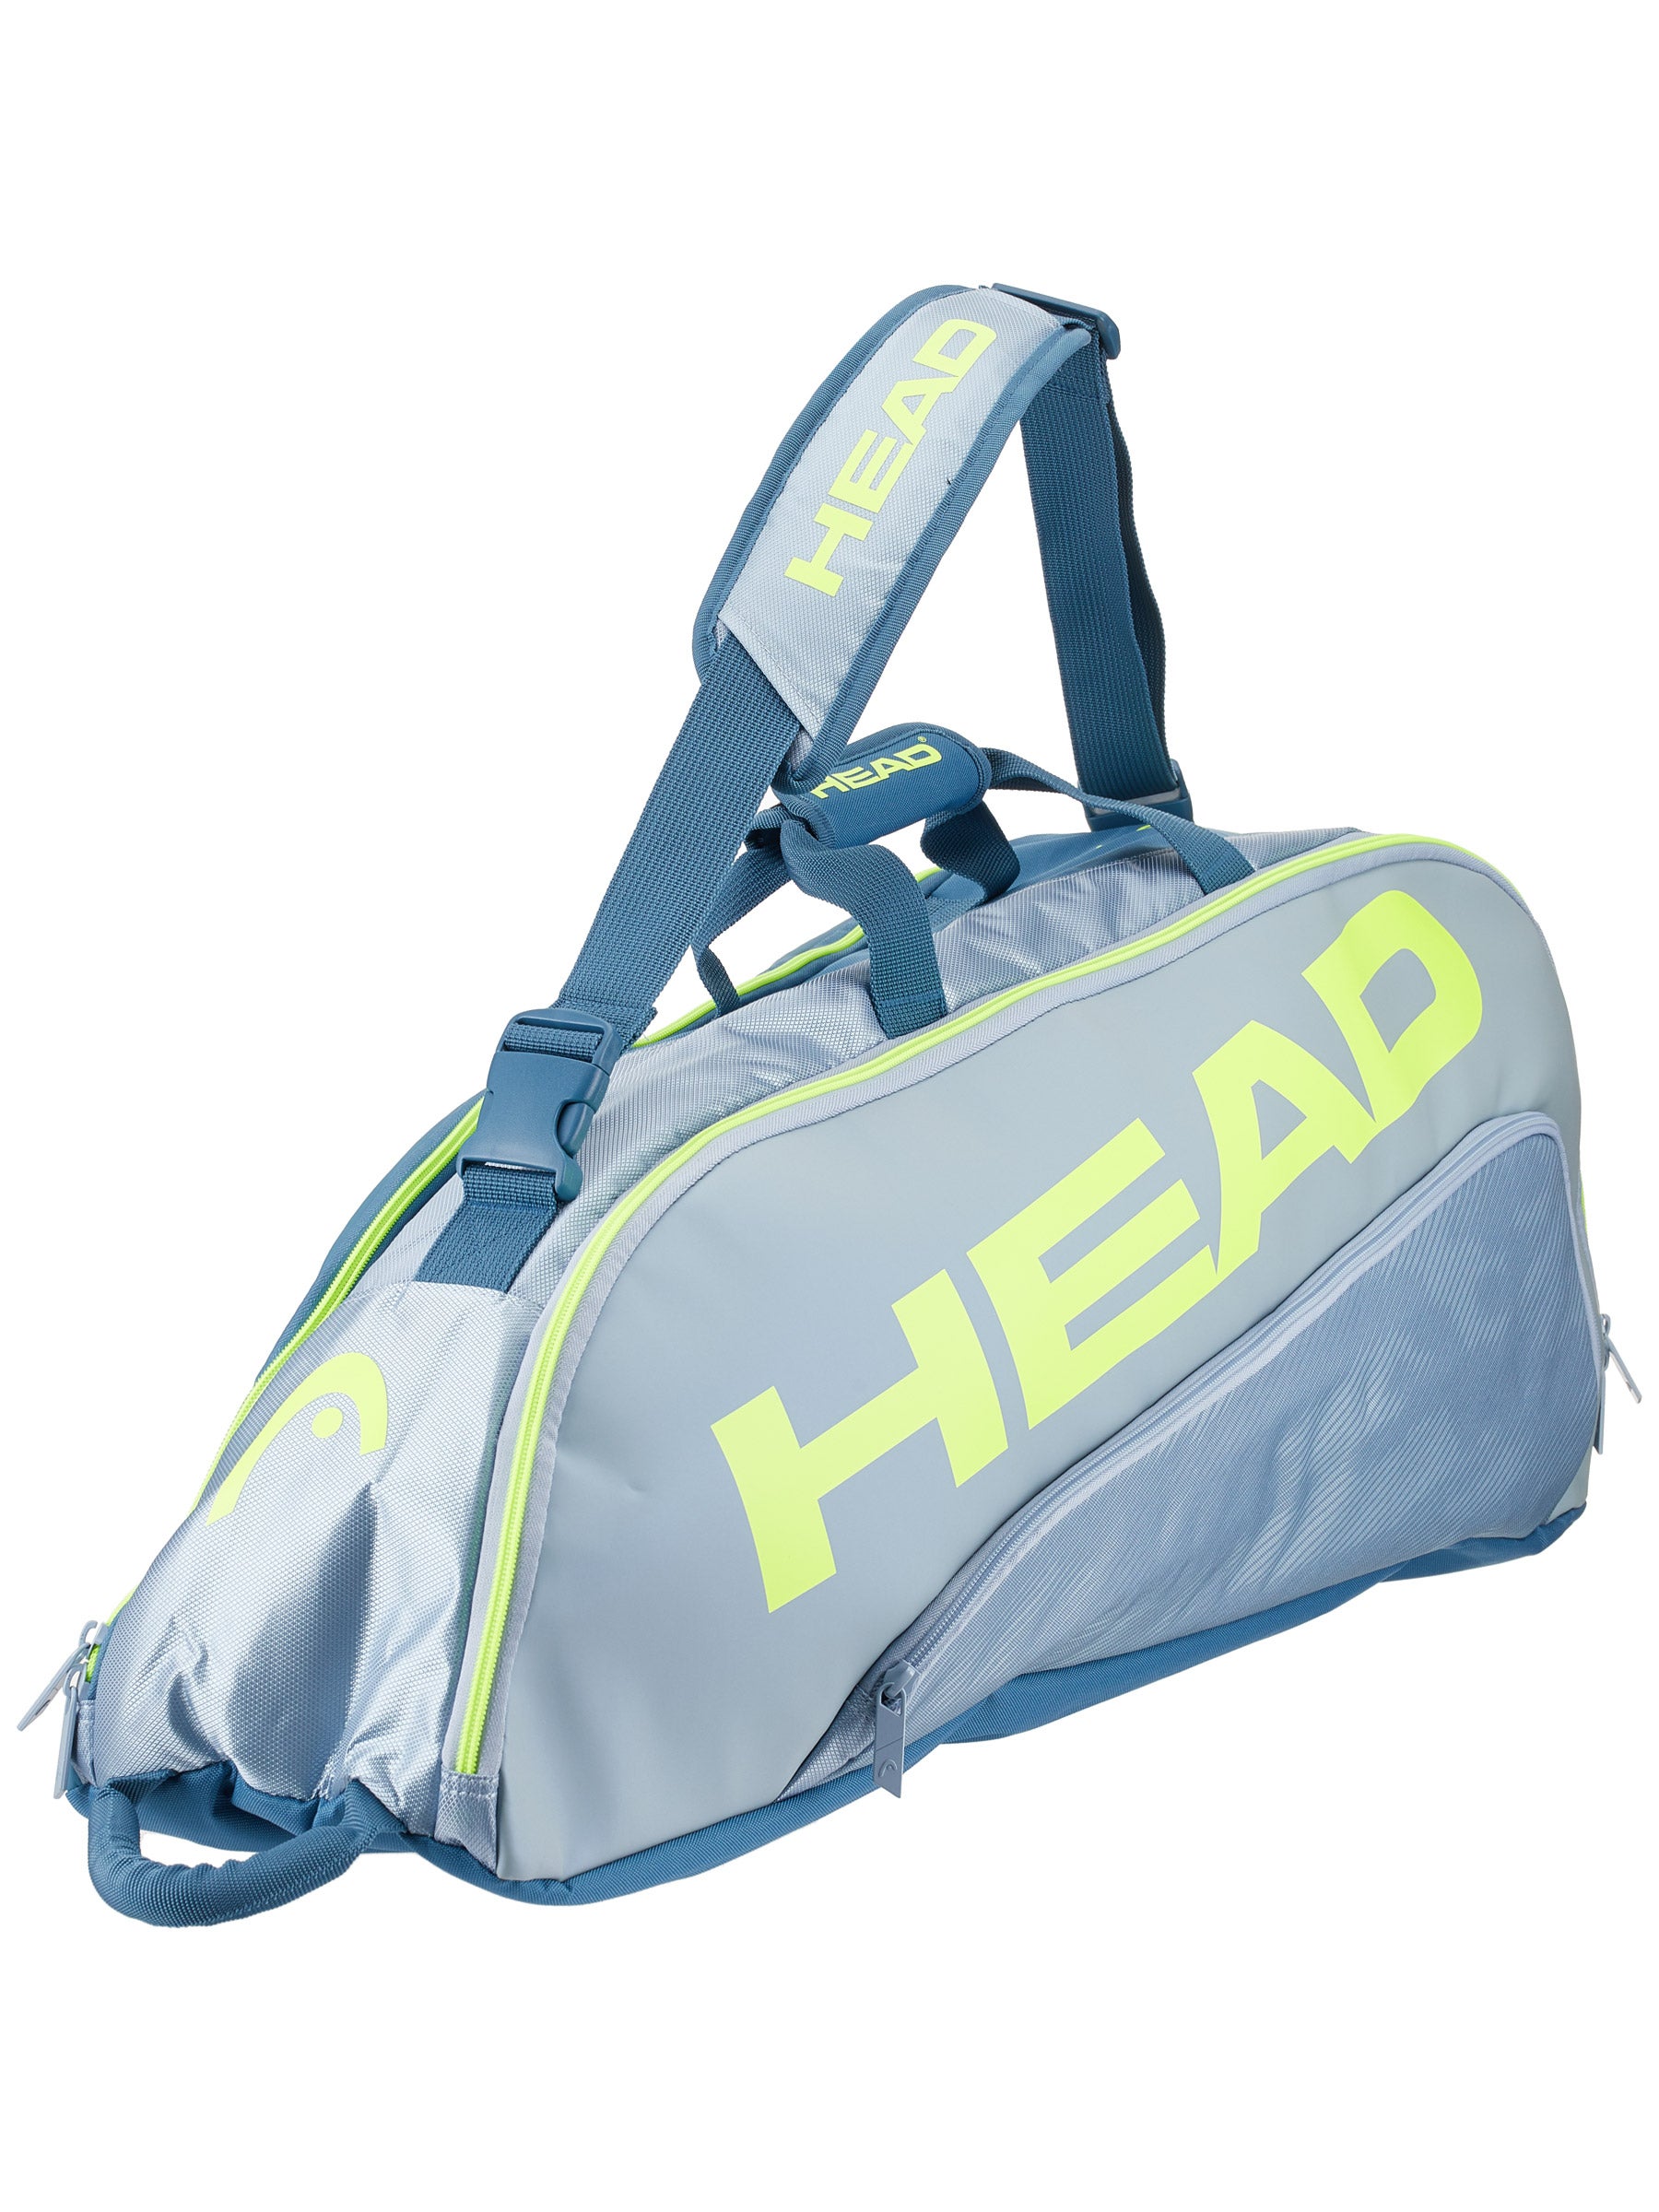 Authorized Dealer Black/Yellow Head Tour Team Extreme Combi 6 Pack Racquet Bag 